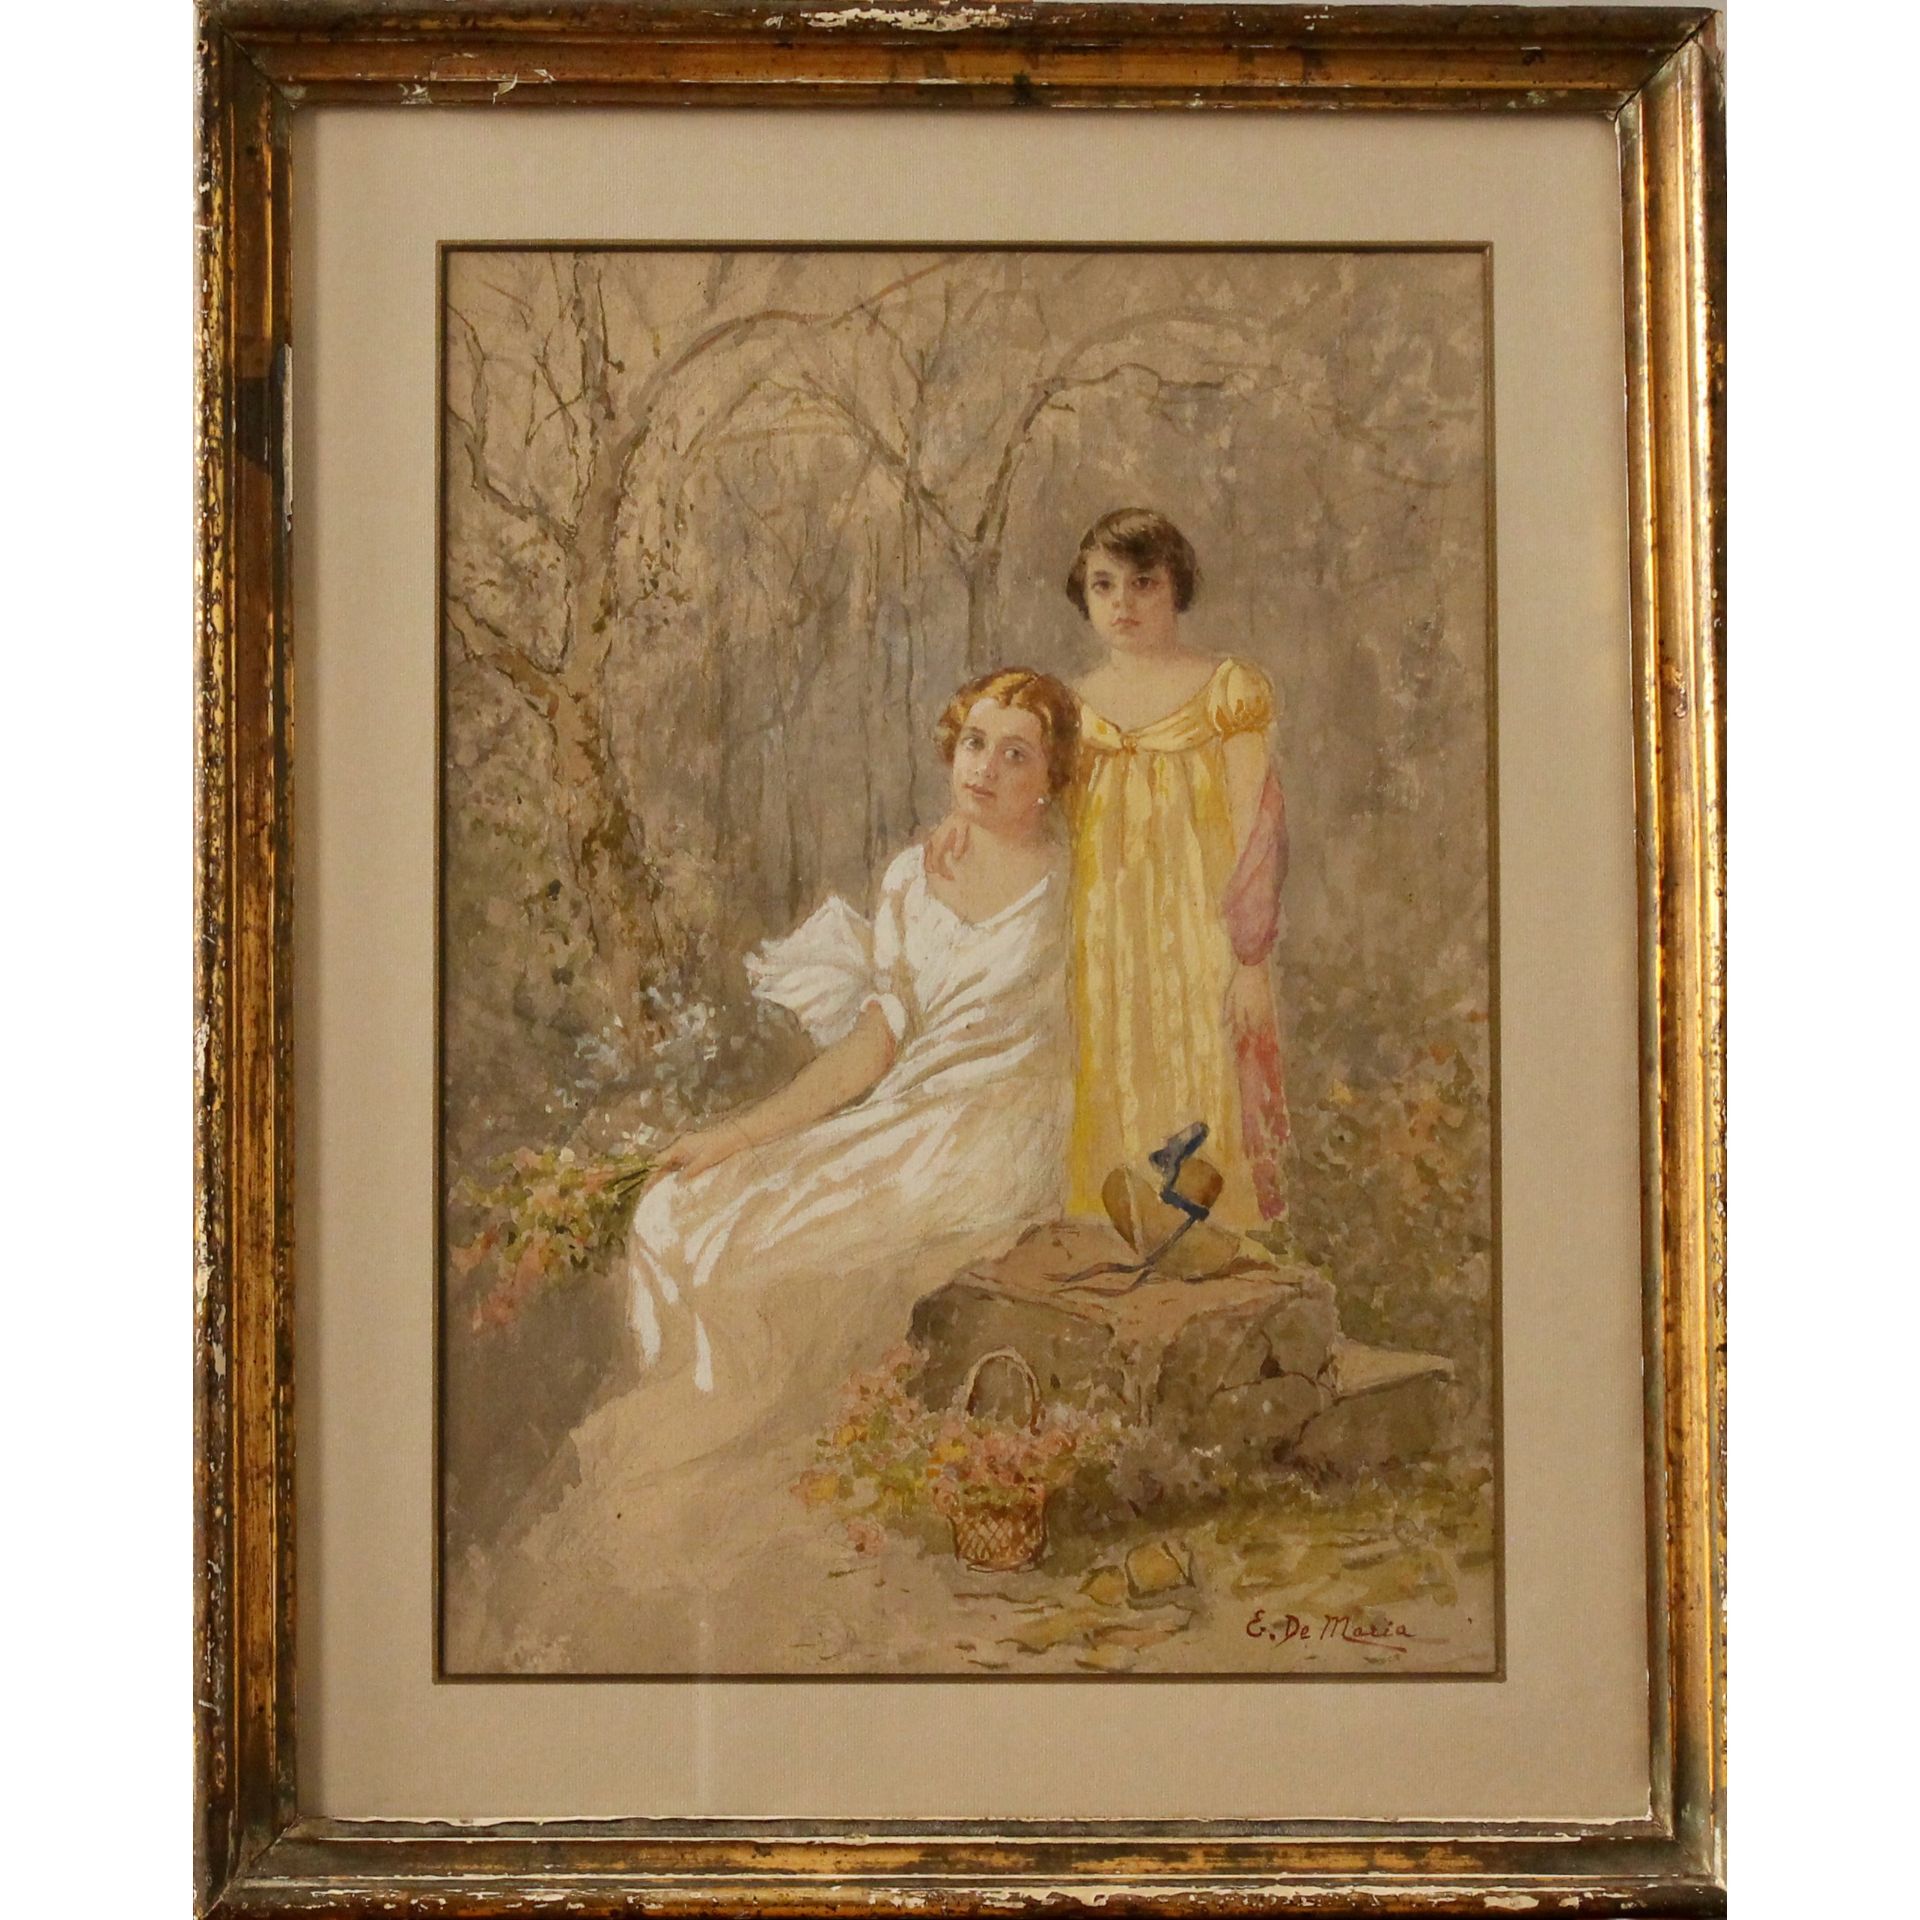 Ettore De Maria Bergler (1850/1915) "Madre con figlia" - "Mother with daughter"